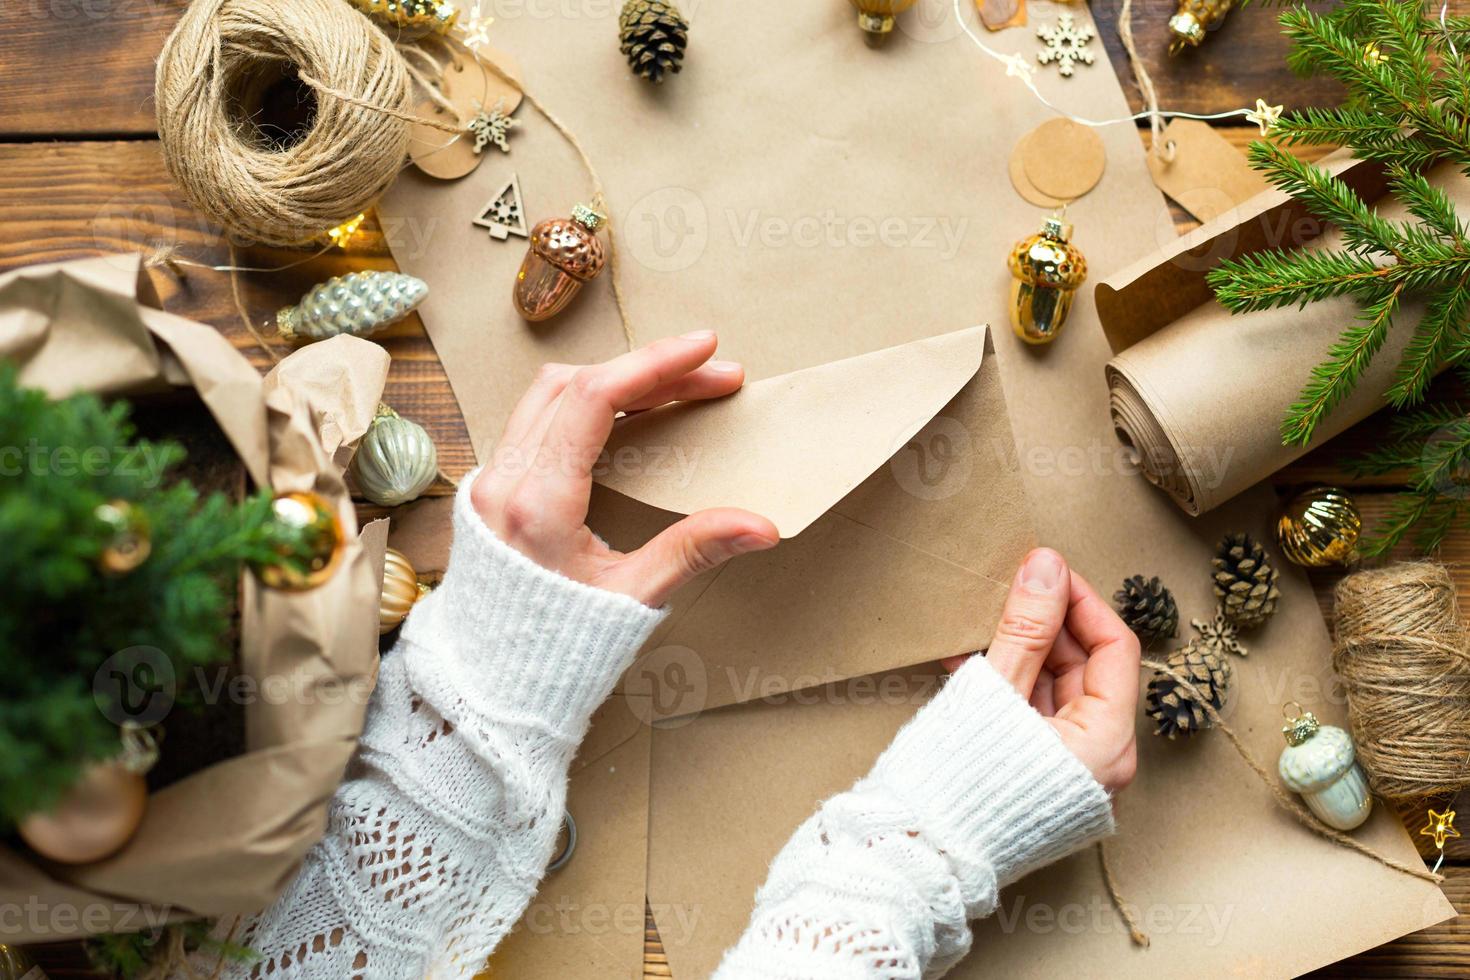 envelop met felicitaties voor Kerstmis en Nieuwjaar in milieuvriendelijke materialen kraftpapier, levende dennentakken, kegels, touw. tags mock-up, natuurlijk decor, met de hand gemaakt. brief voor de kerstman. botweg foto